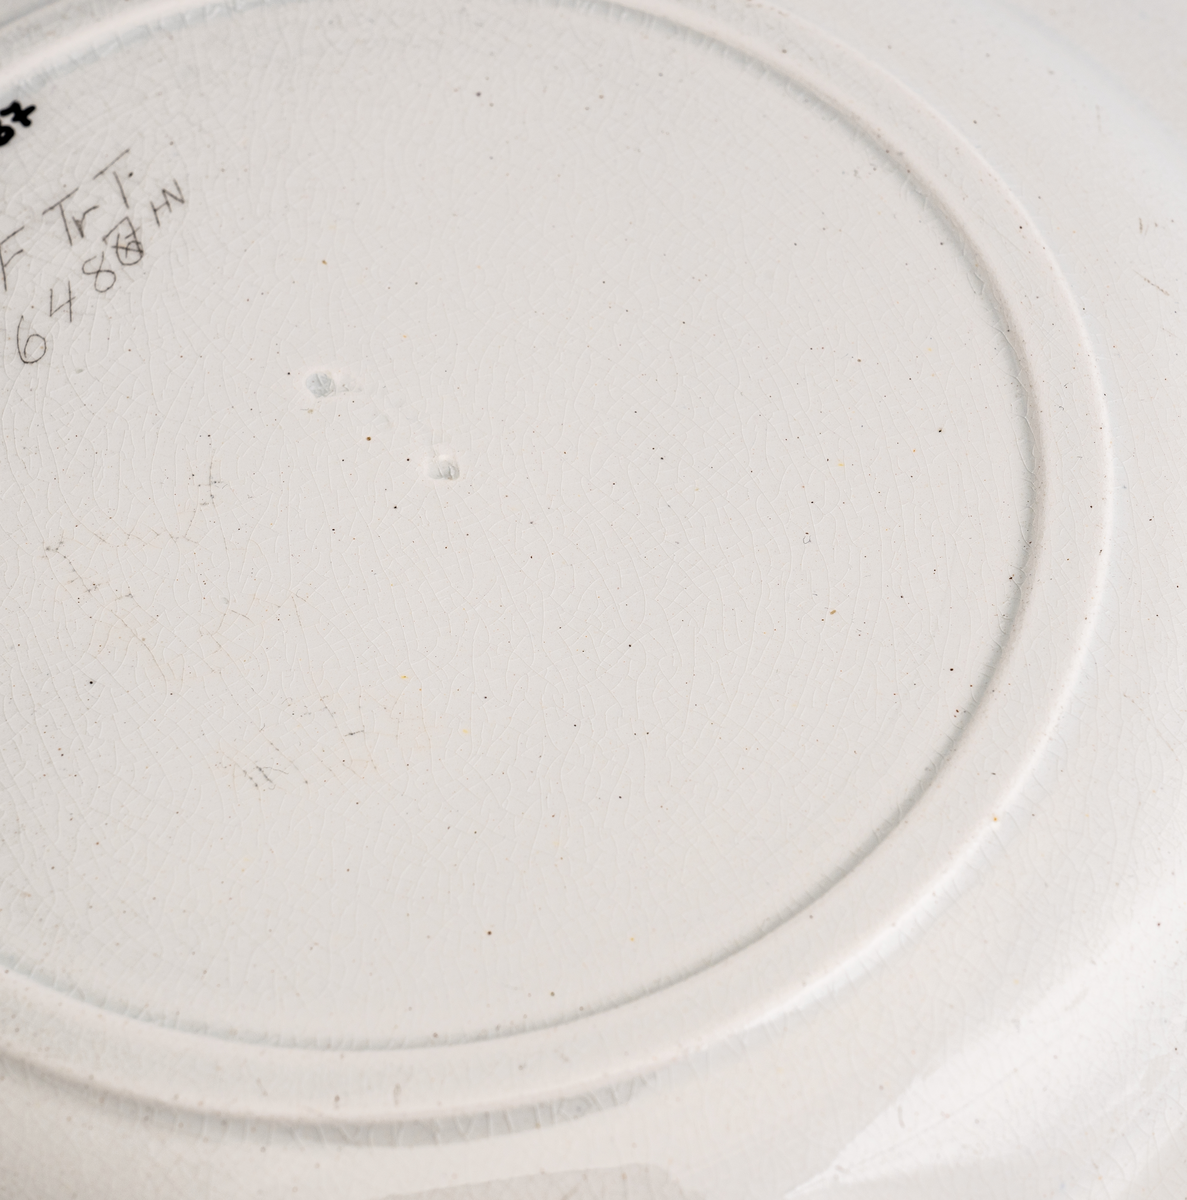 En mellomstor flat tallerken av glasert keramikk/porselen. Den er hvit på farge (ensfarget). Kanten er inndelt i 12 felt "adskilt" med loddrette tversgående streker som stikker opp/som er støpt i kanten. Flaten på midten har en diameter på 16,5cm. Det er inskripsjon/dypstempel på undersiden.
